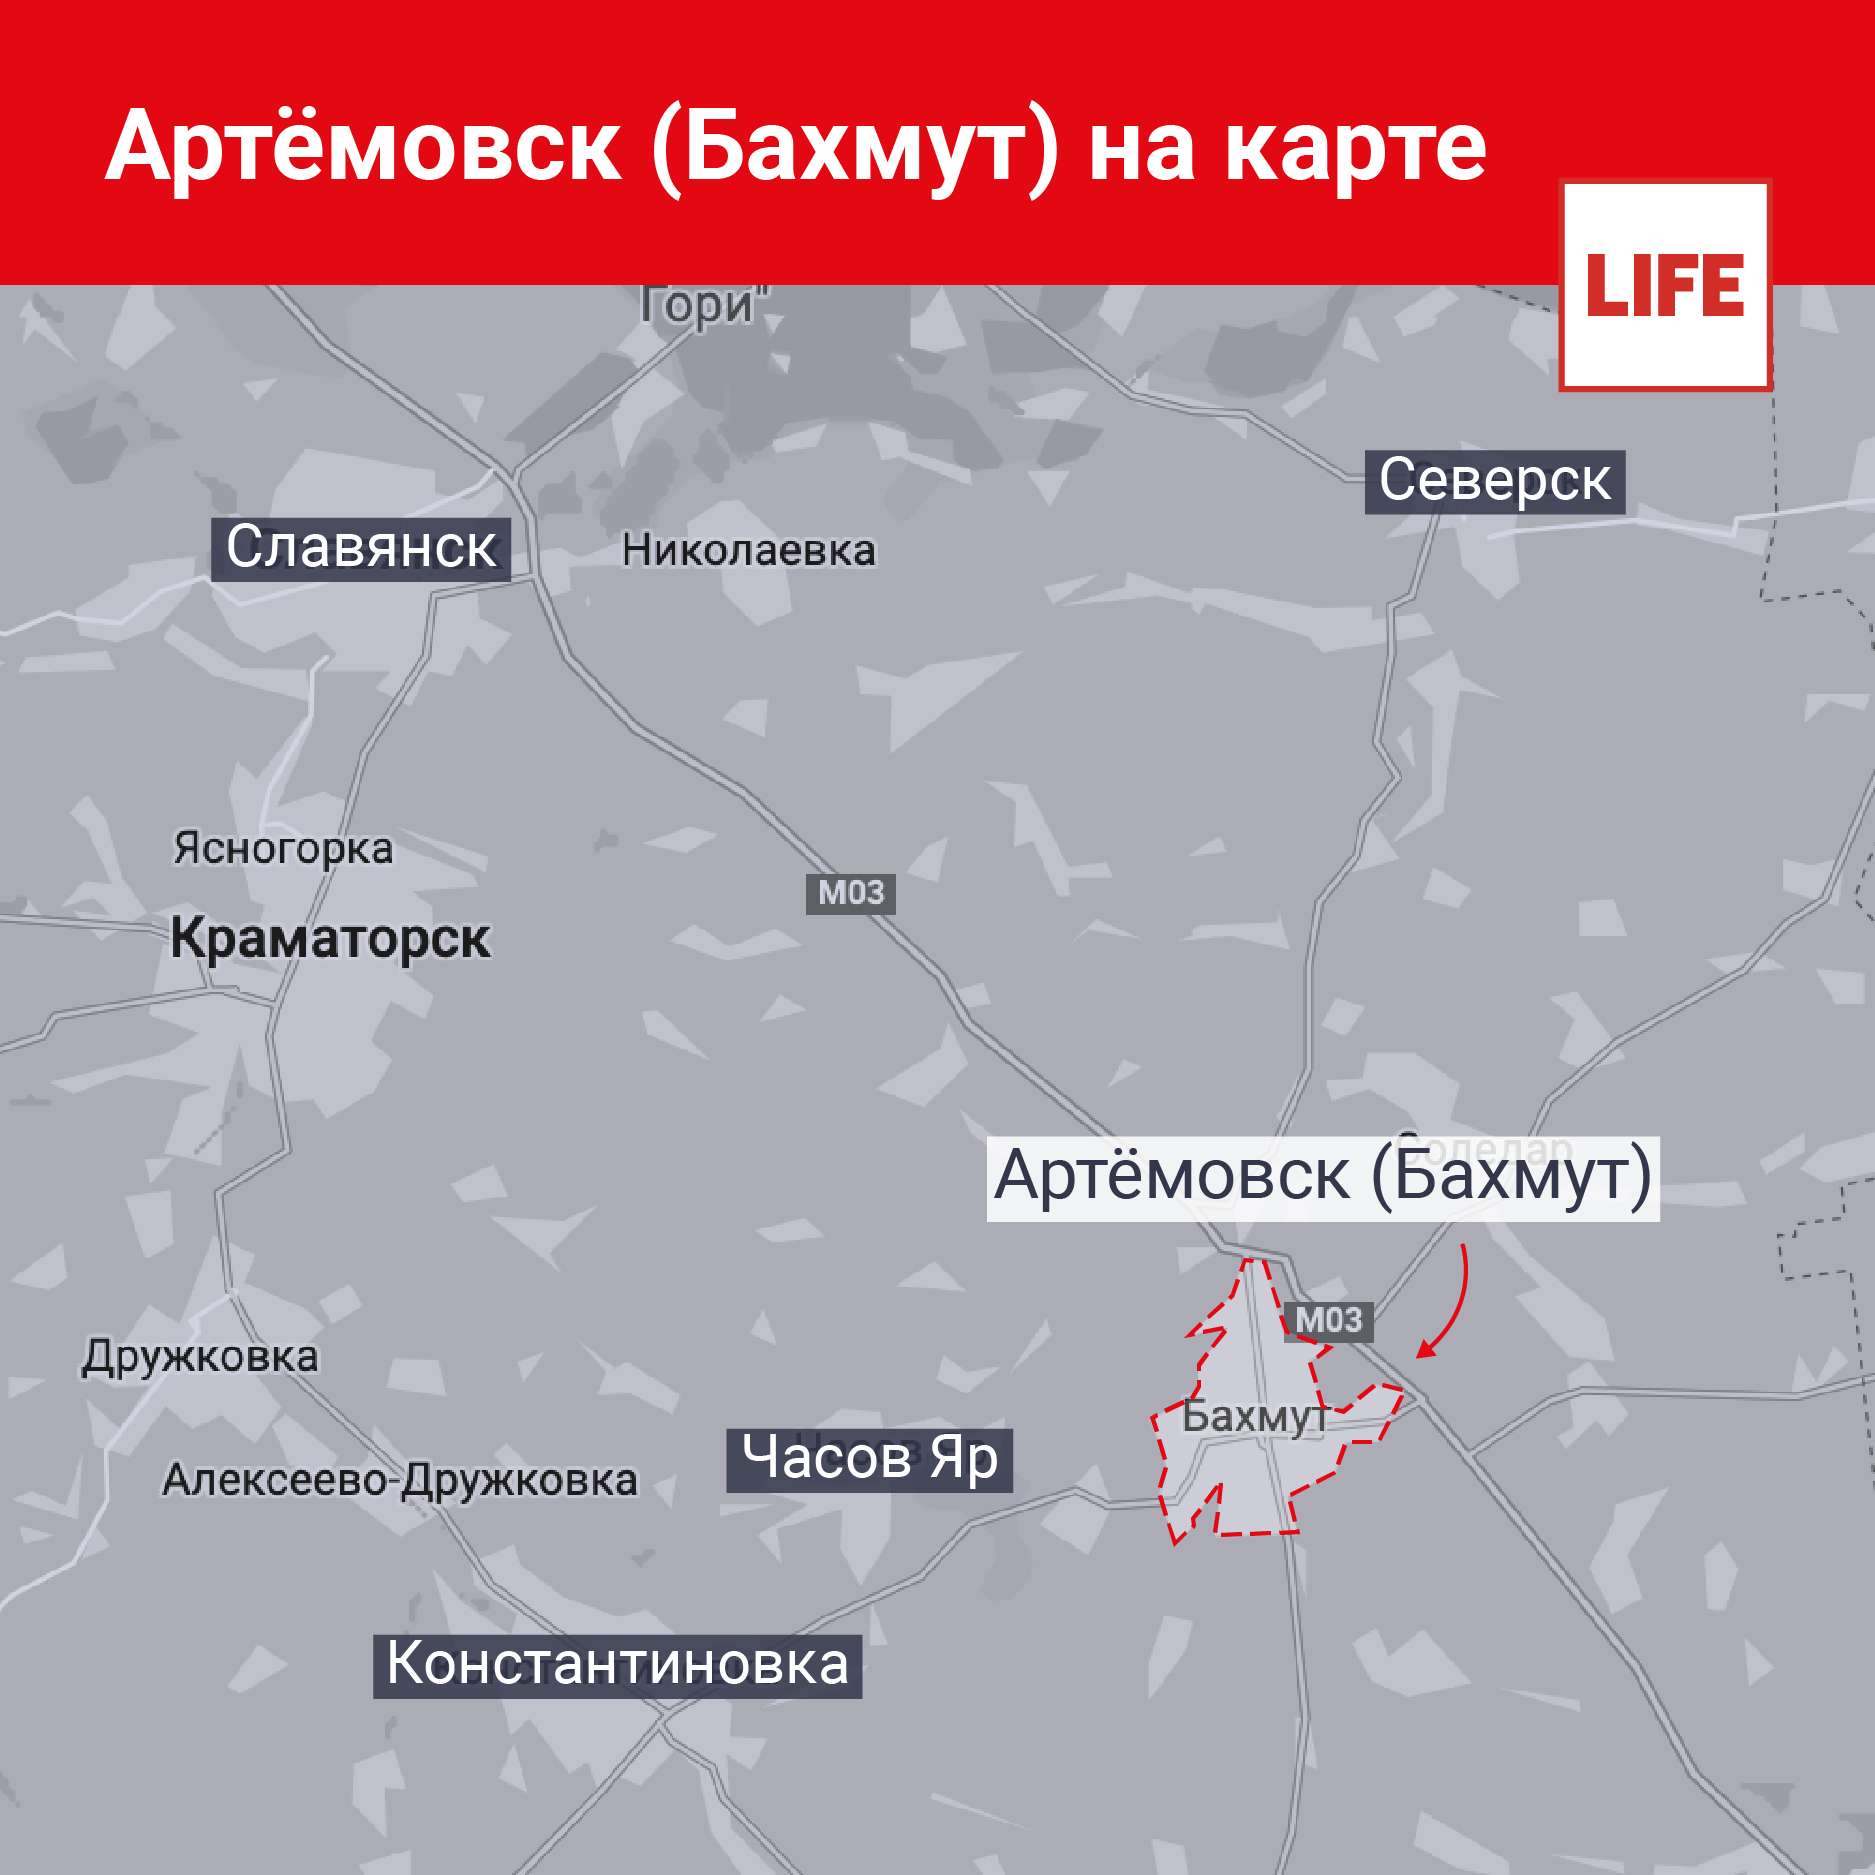 Артёмовск (Бахмут) на карте. Иллюстрация © LIFE 